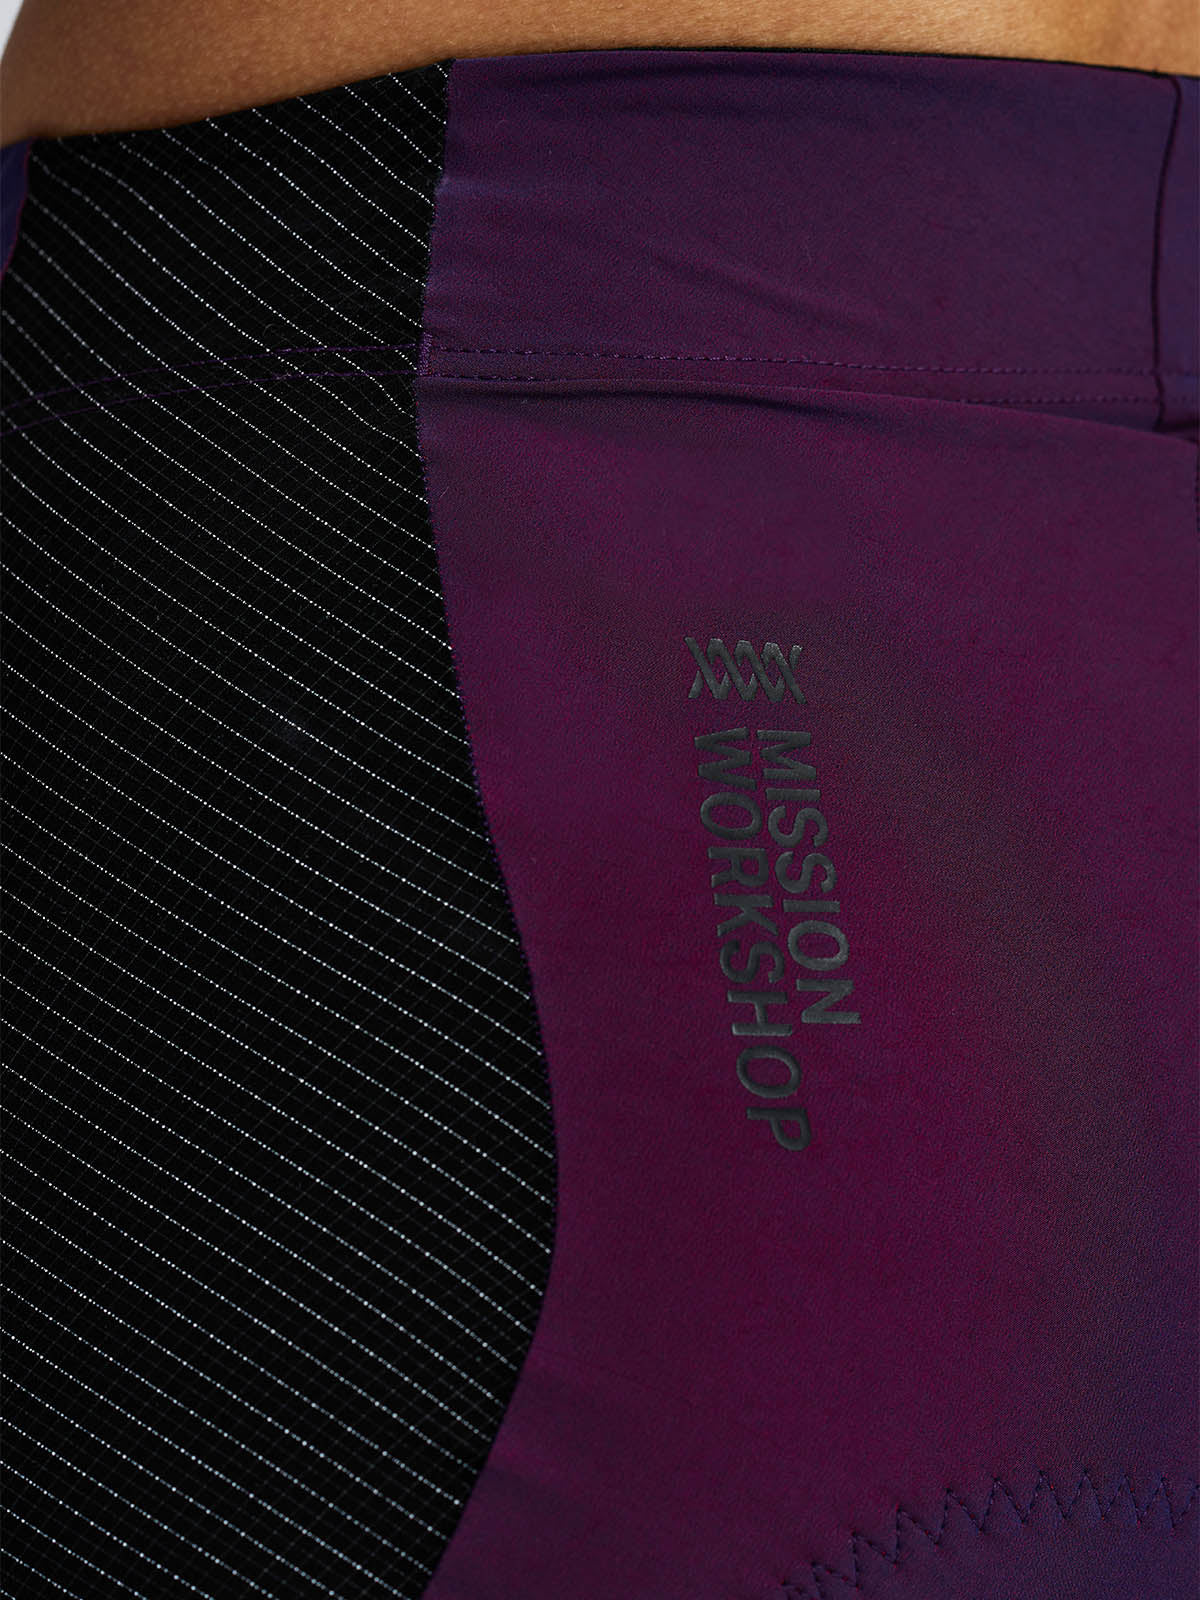 Mission Pro Short Women's by Mission Workshop - Bolsas impermeables y ropa técnica - San Francisco y Los Angeles - Fabricado para resistir - Garantizado para siempre